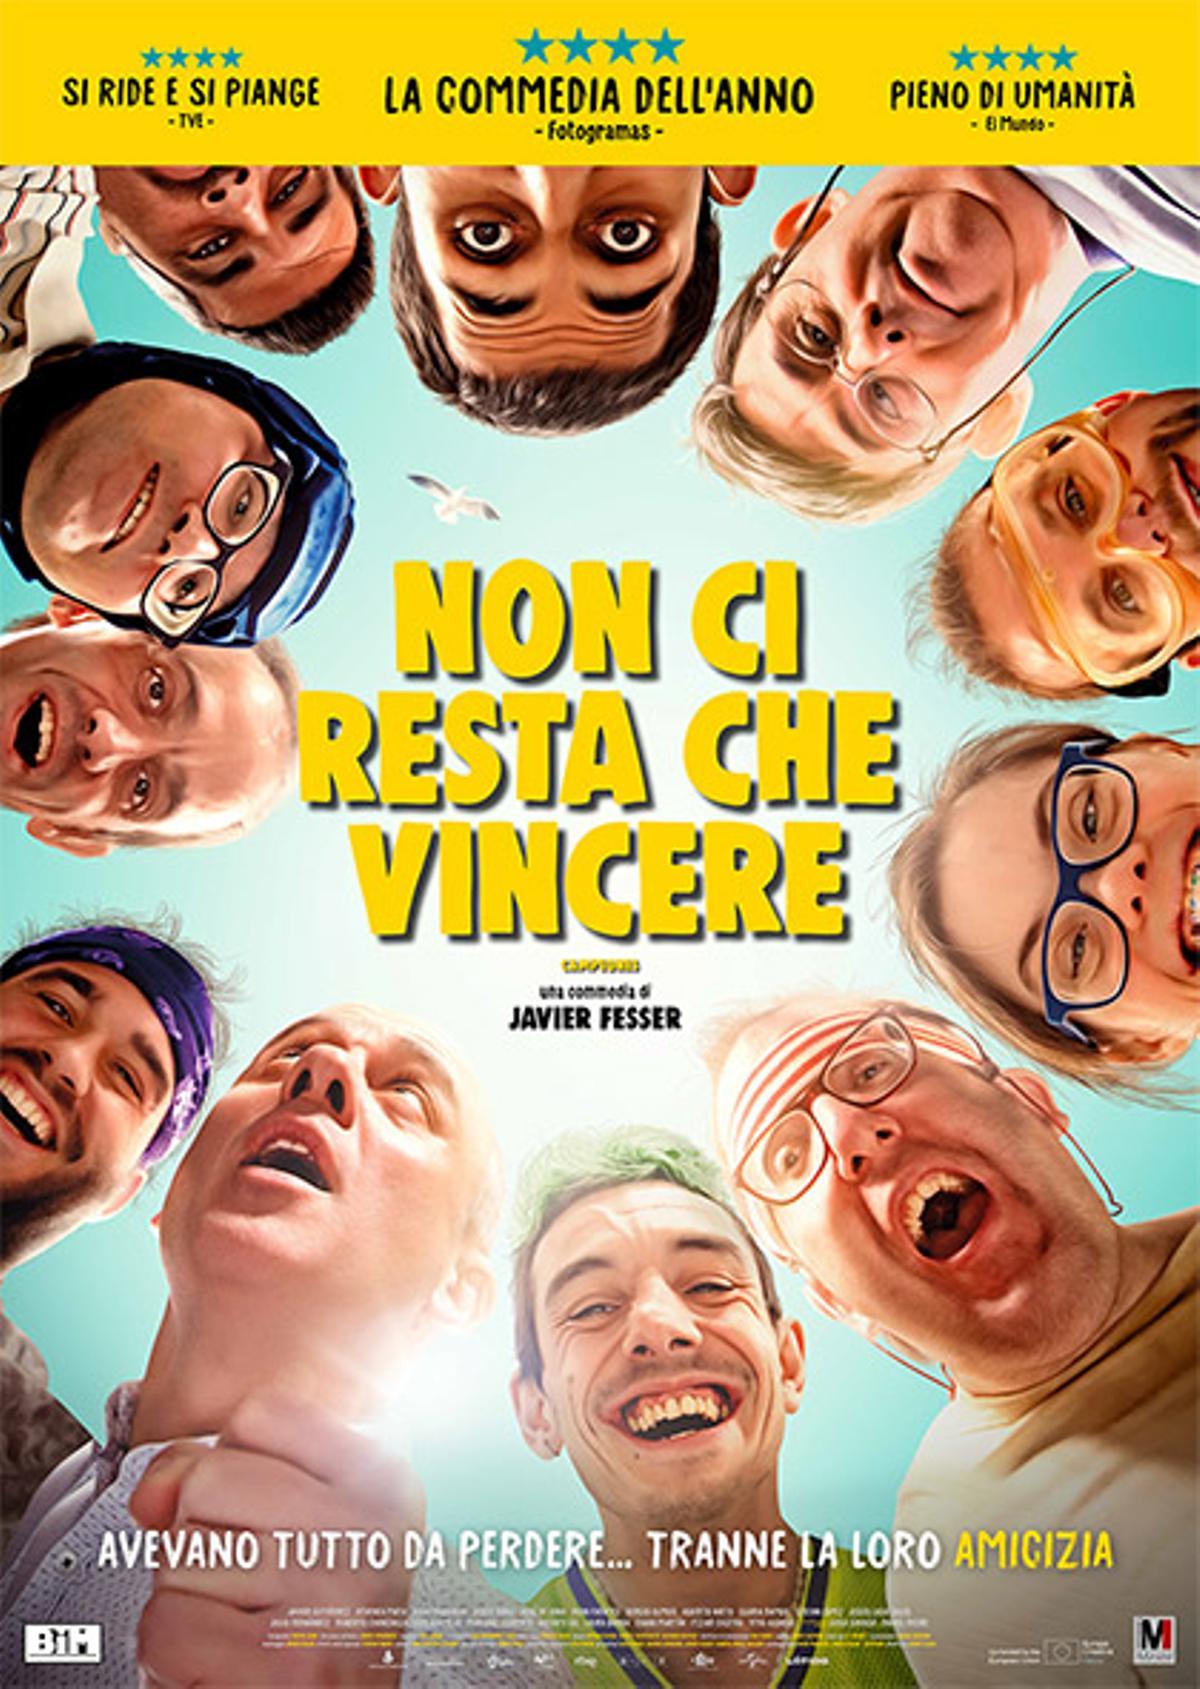 La película dirigida por Javier Fesser, traducida al italiano.